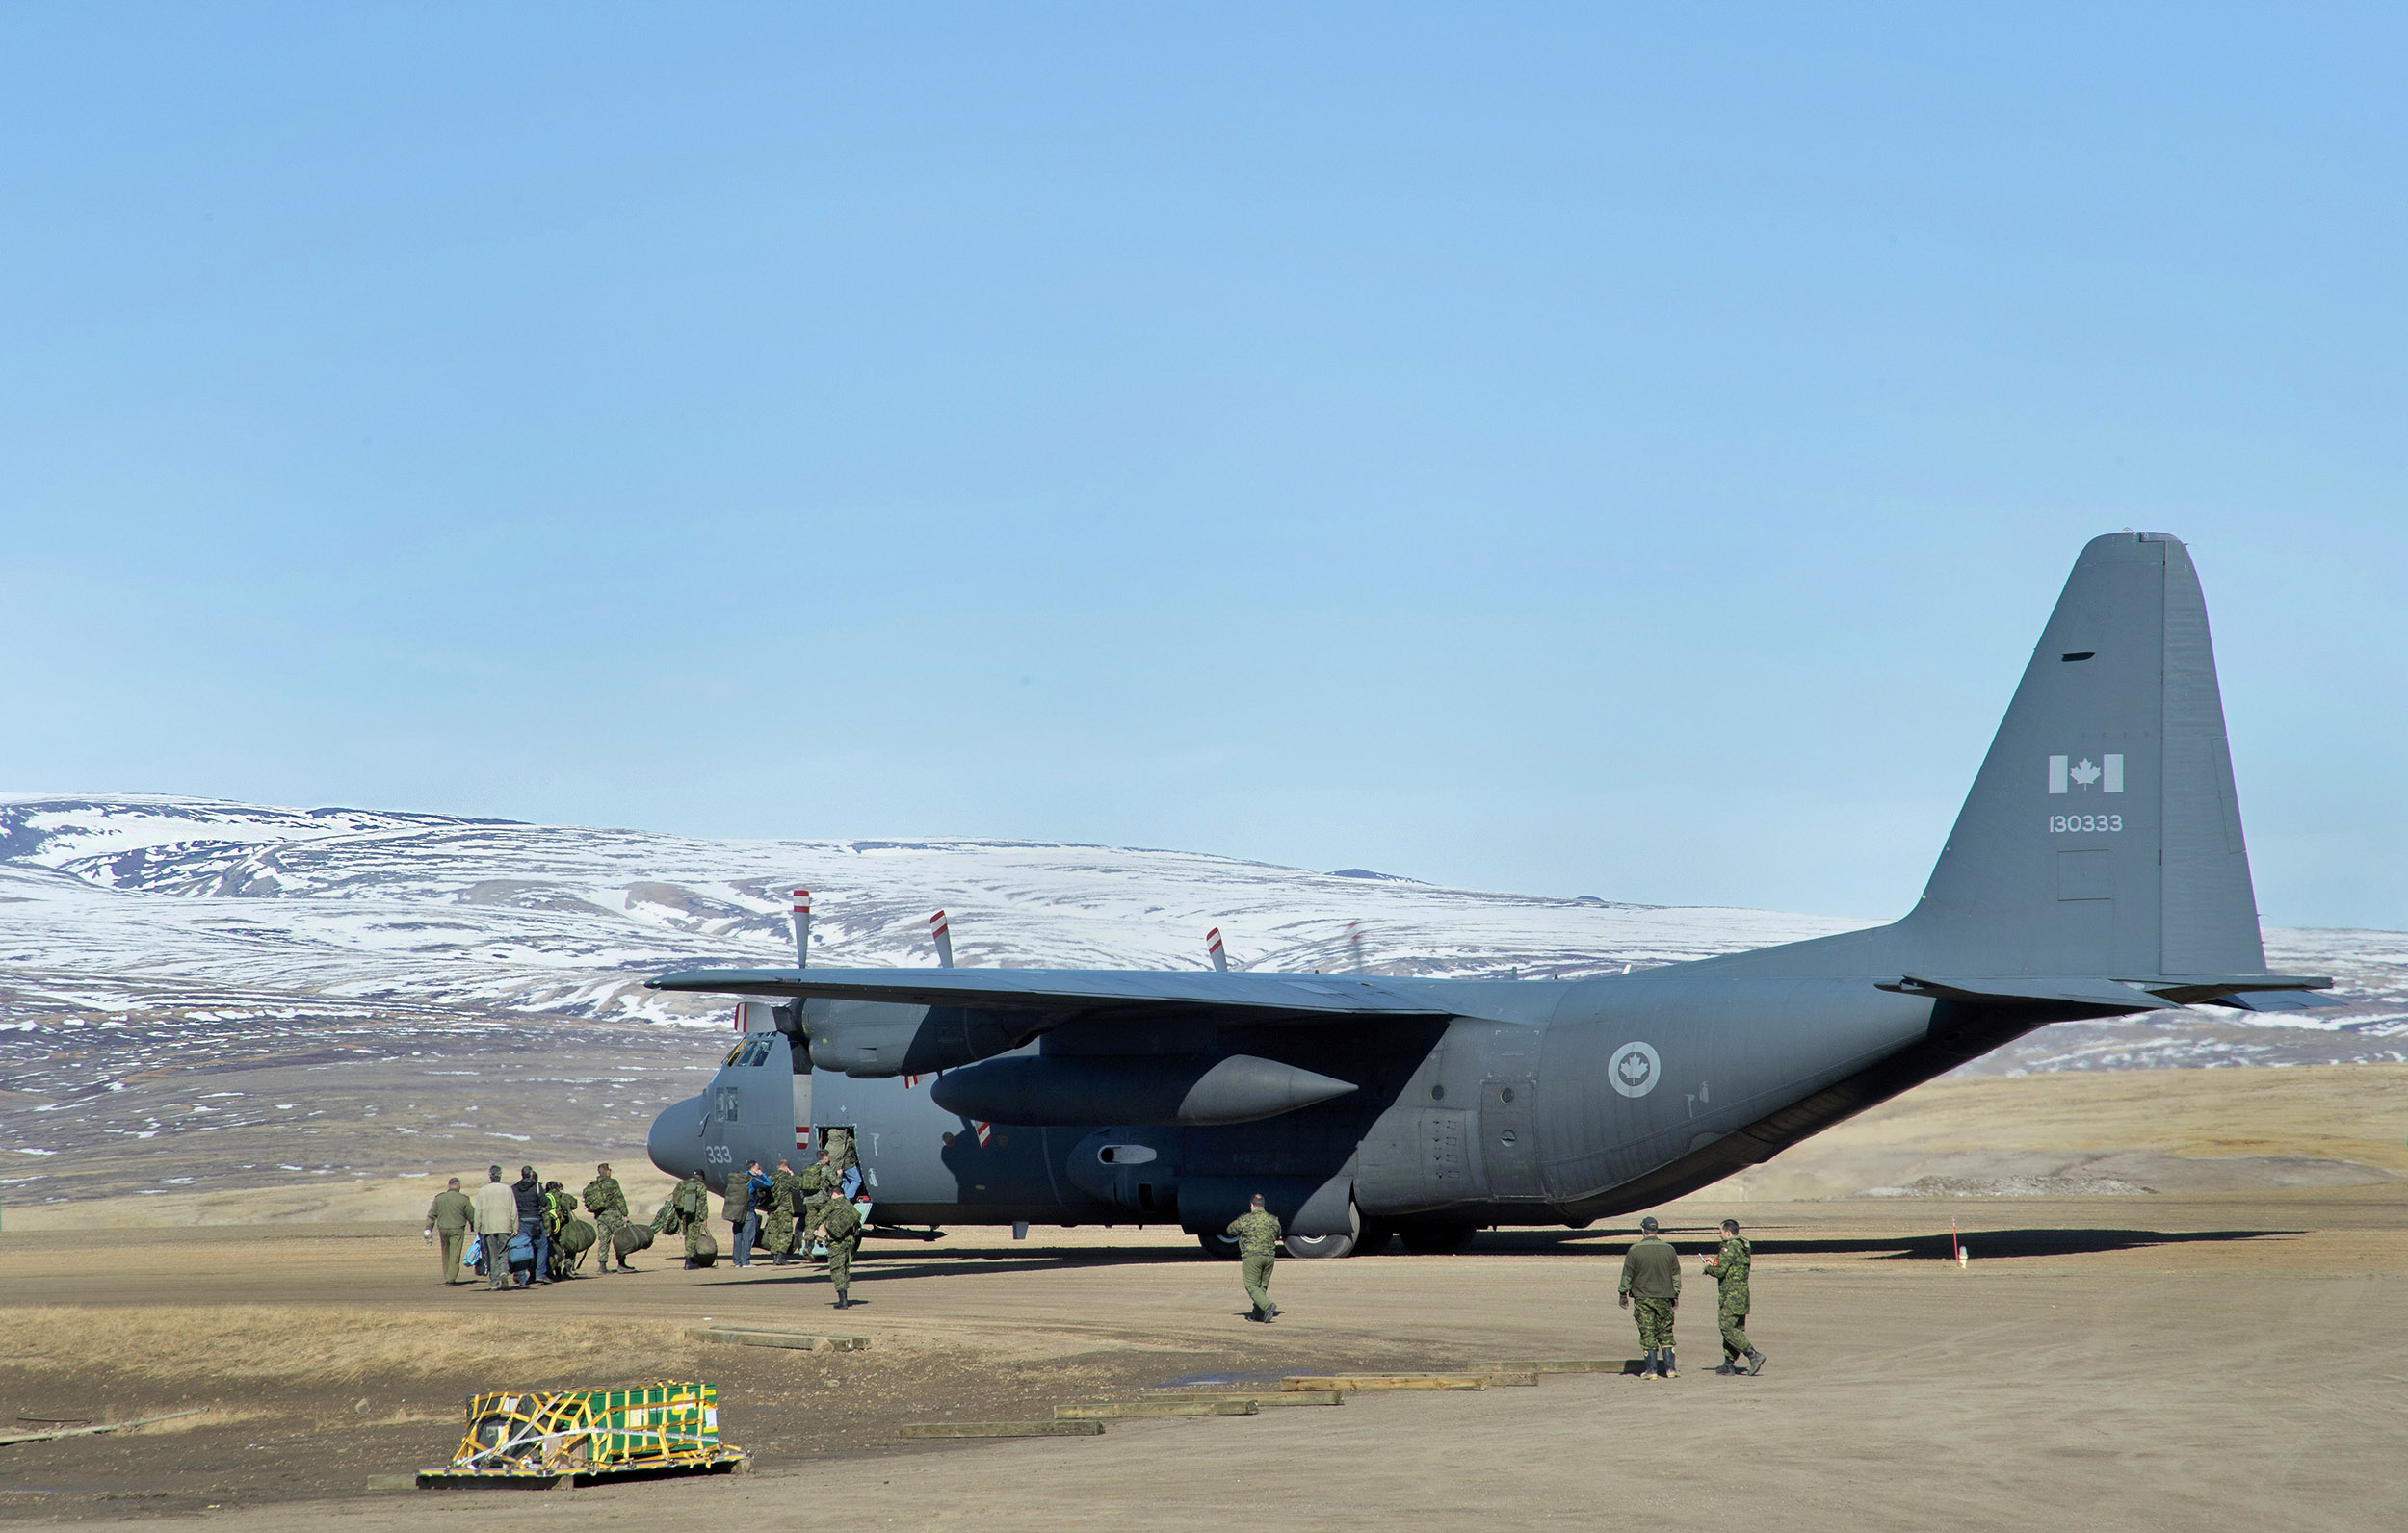 À la station des Forces canadiennes Alert, des militaires canadiens montent à bord d’un avion CC-130 Hercules du 426e Escadron à destination d’Eureka, au Nunavut, pendant l’opération Nevus, le 14 juin 2016. PHOTO : Maître de 2e classe Belinda Groves, YK-2016-040-002